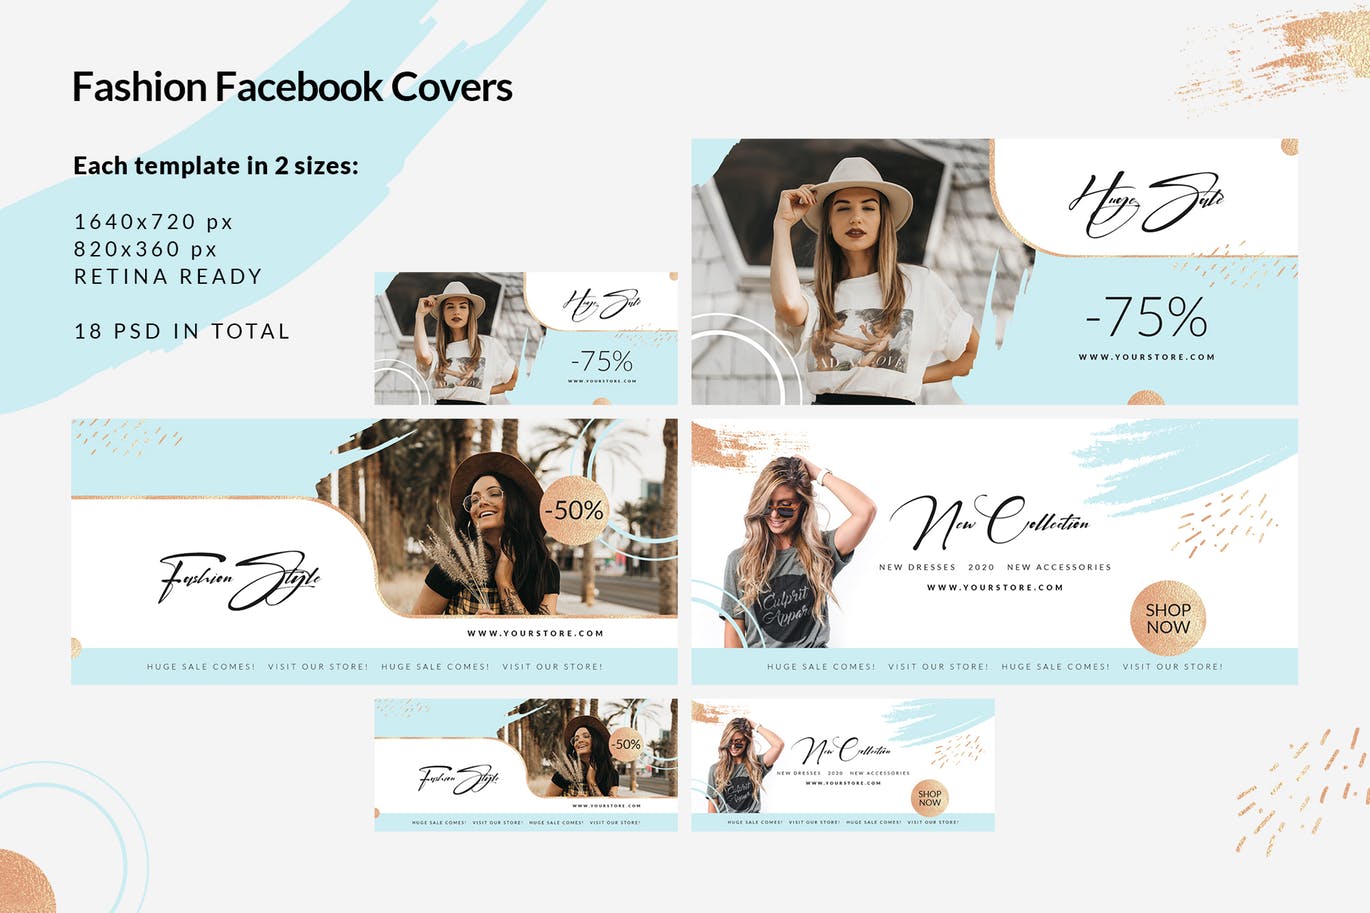 时尚品牌打折促销Facebook封面设计模板大洋岛精选 Fashion Facebook Covers插图1